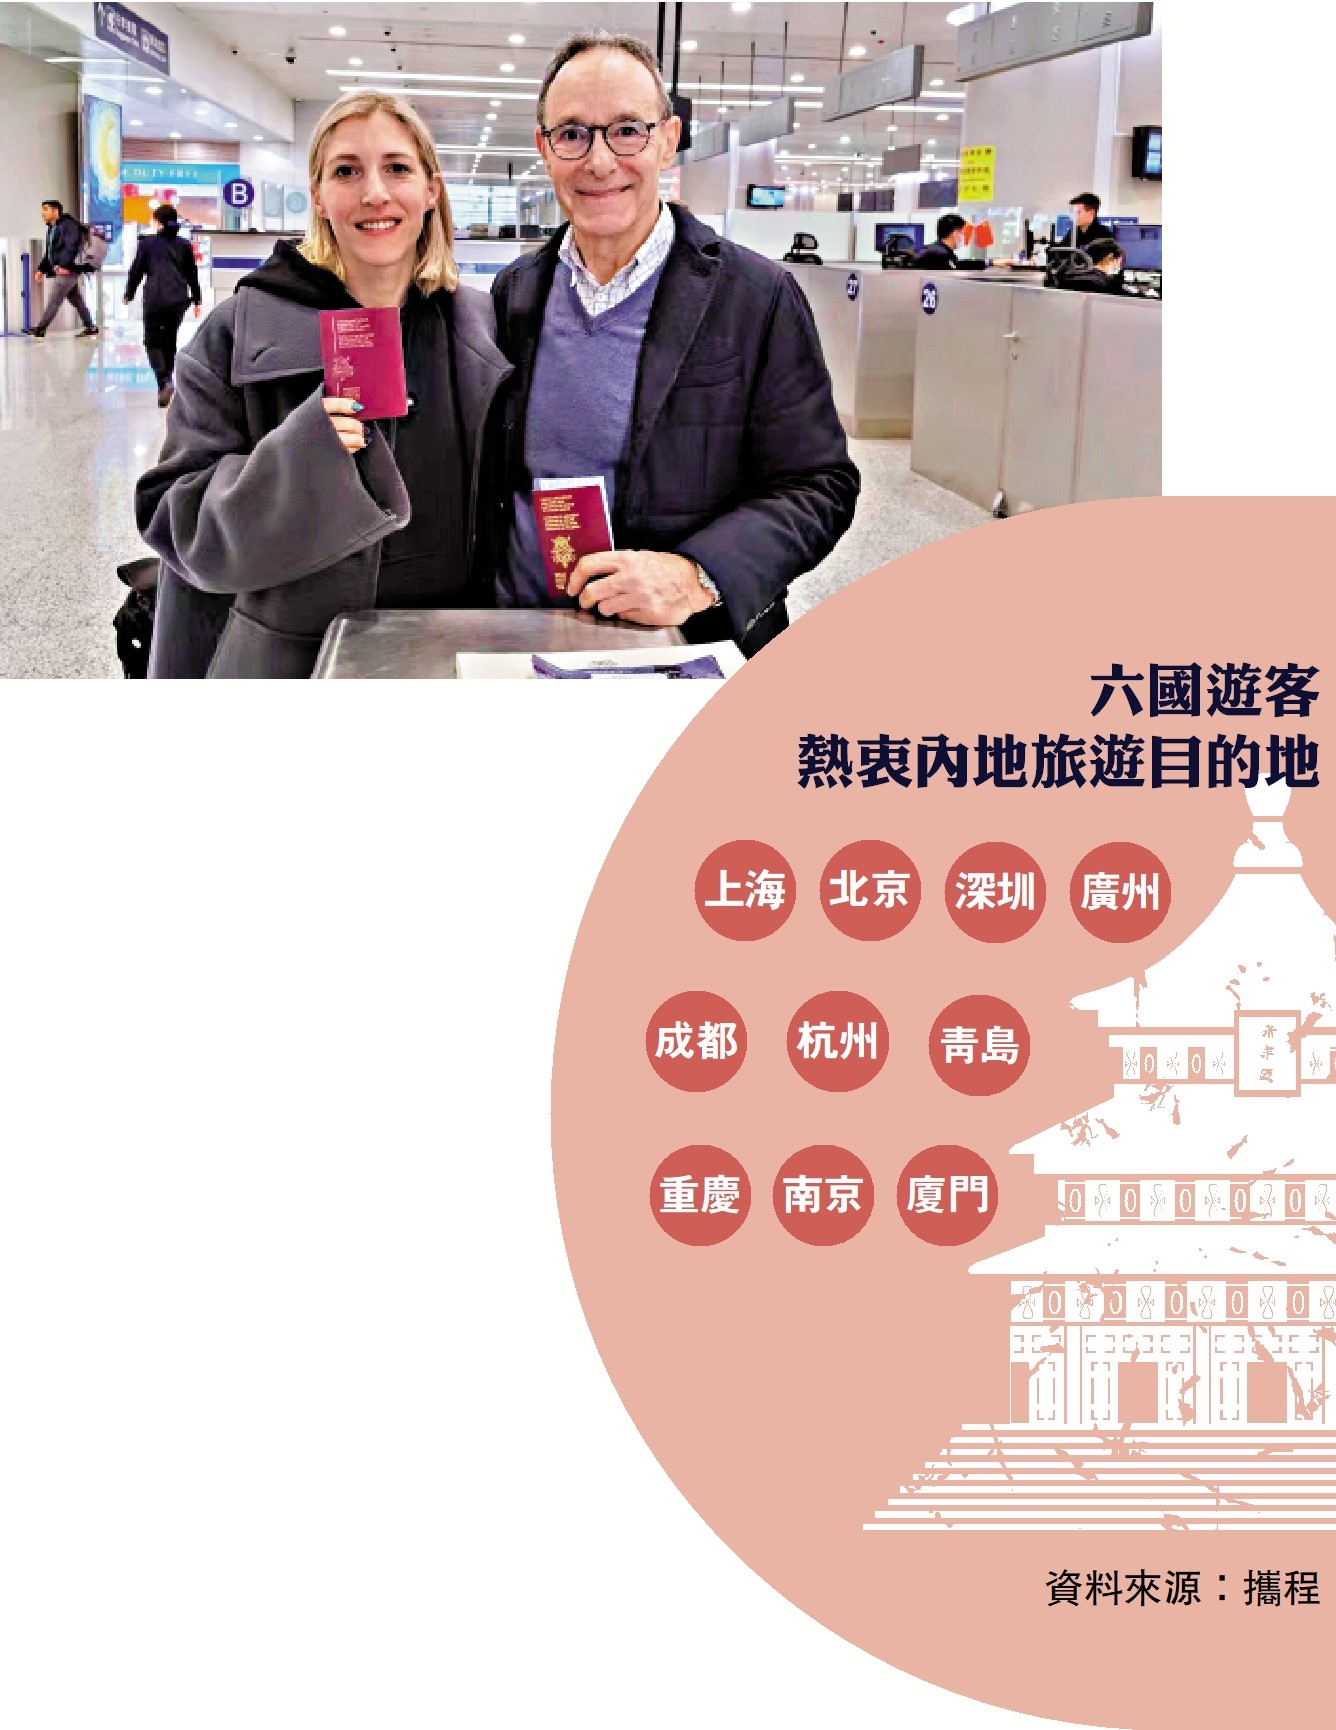 　　圖：來自比利時的免簽入境旅客在上海浦東機場辦理完邊檢手續後展示自己的護照證件。